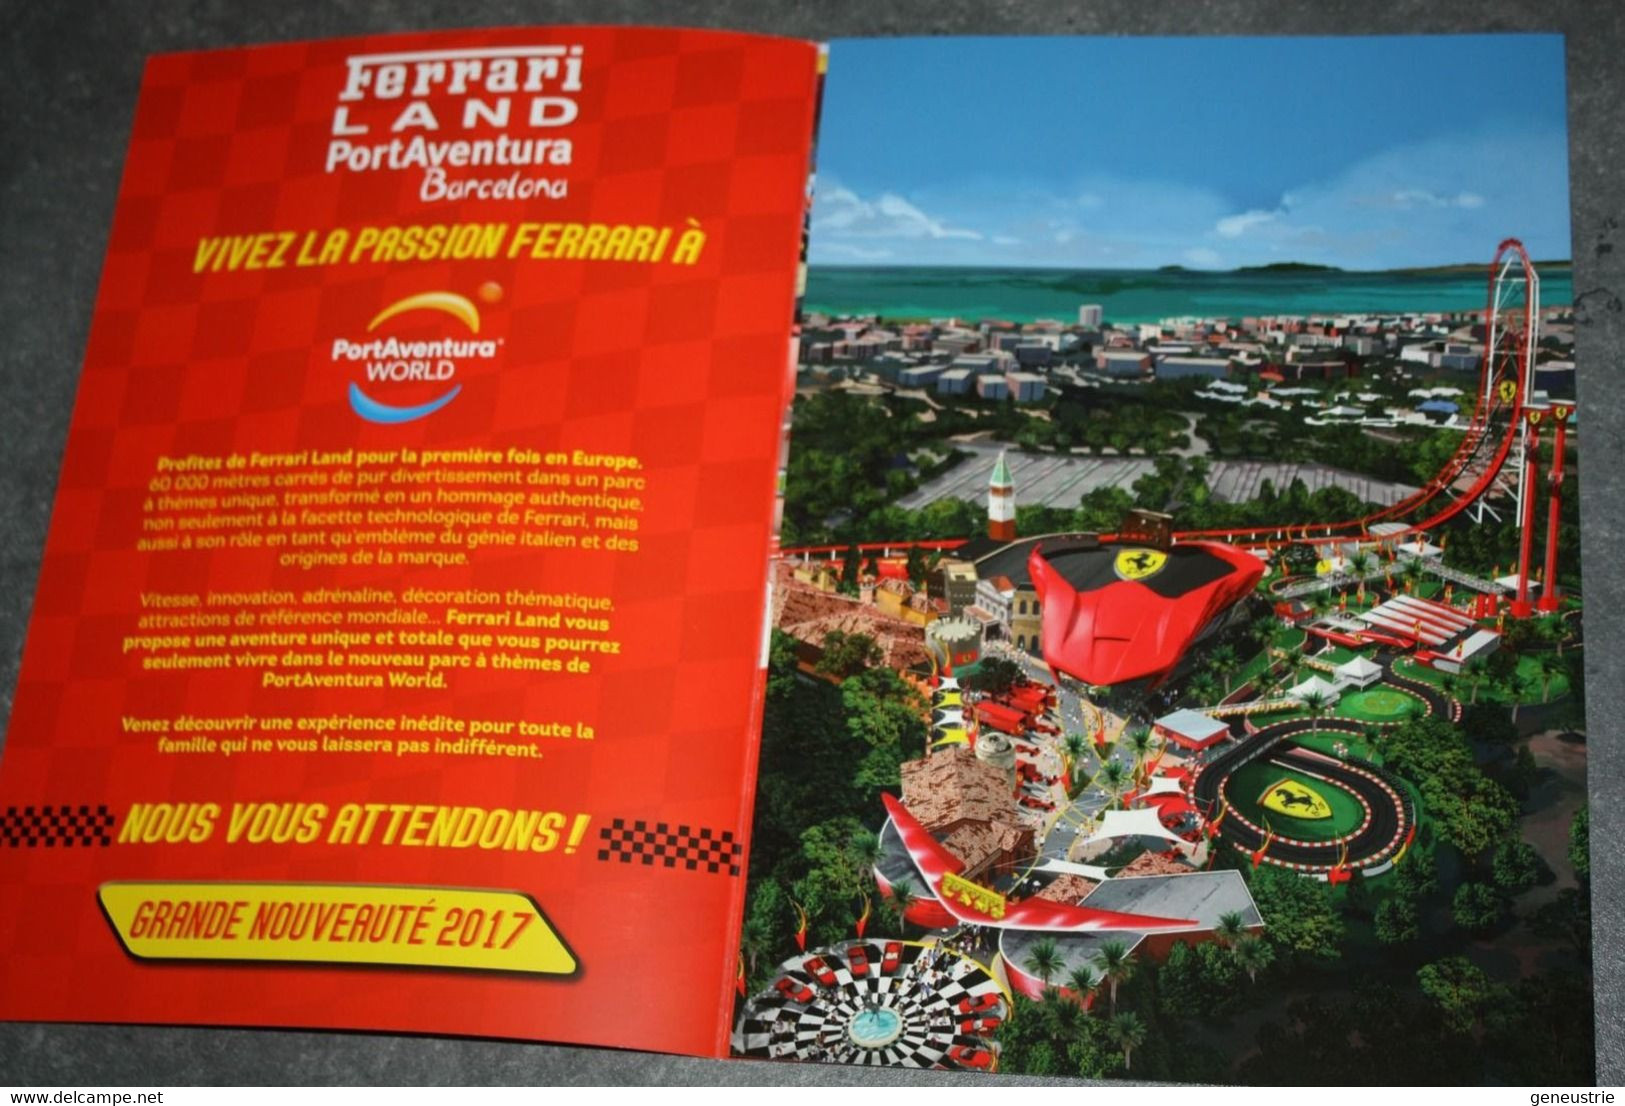 Très Rare Plaquette Publicitaire Promotionnelle Inauguration 2017 "Ferrari Land - PortAventura - Barcelone" - Automobile - F1